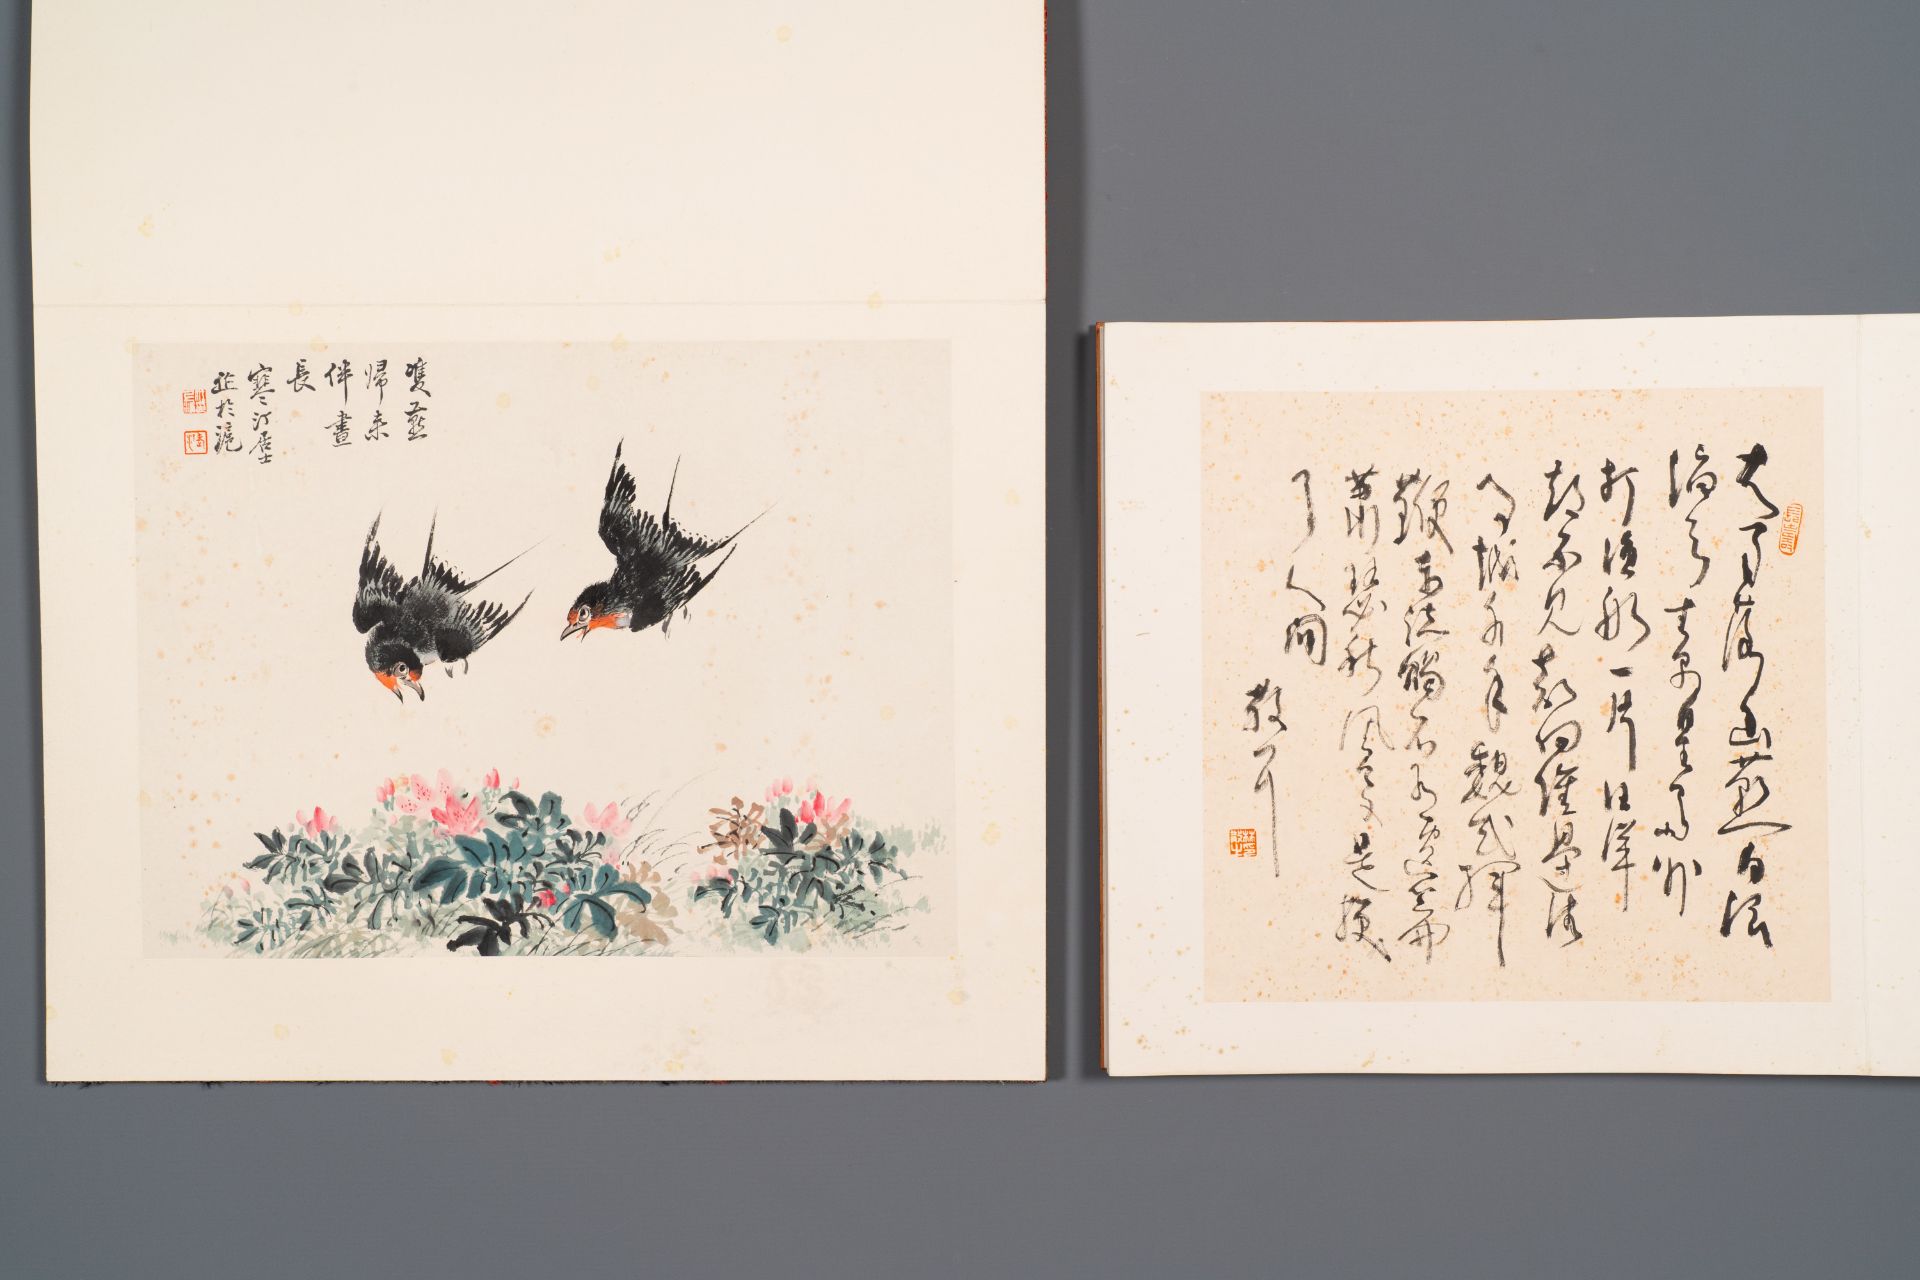 Three albums: 'Jiang Hanting æ±Ÿå¯’æ±€ (1904-1963), Lin Sanzhi æž—æ•£ä¹‹ (1898-1989) and Qi Gong å¯ - Bild 9 aus 23